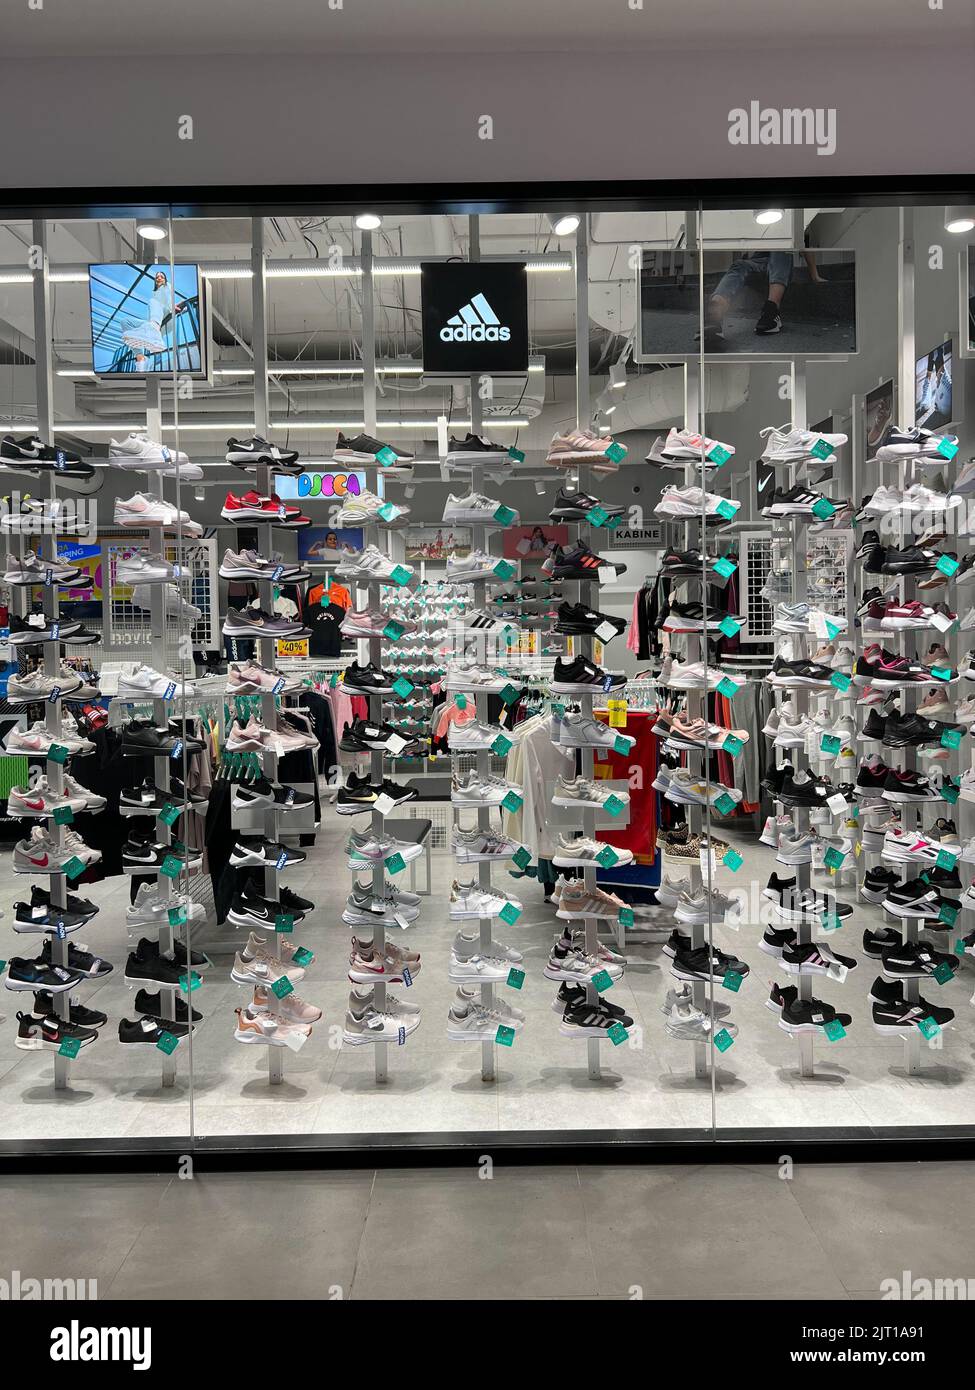 Budva, Monténégro - 01.08.22: Présentation avec les sneakers Adidas de marque dans un magasin de sport Banque D'Images